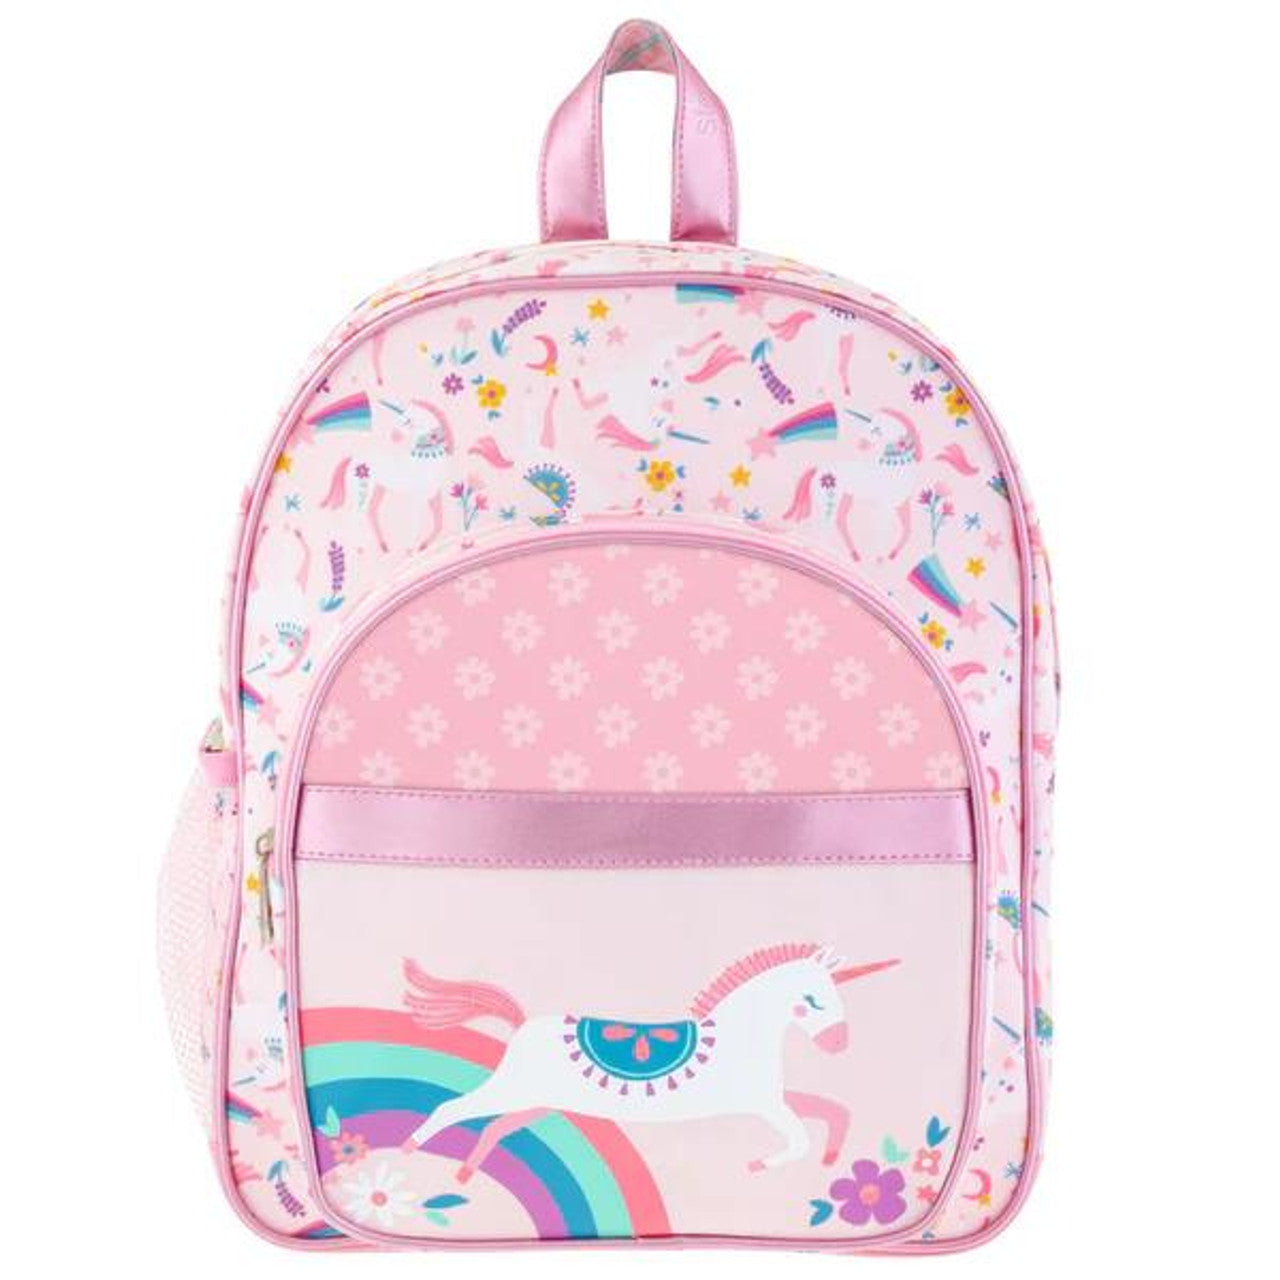 Stephen Joseph Classic Backpack for Kids - Unicorn